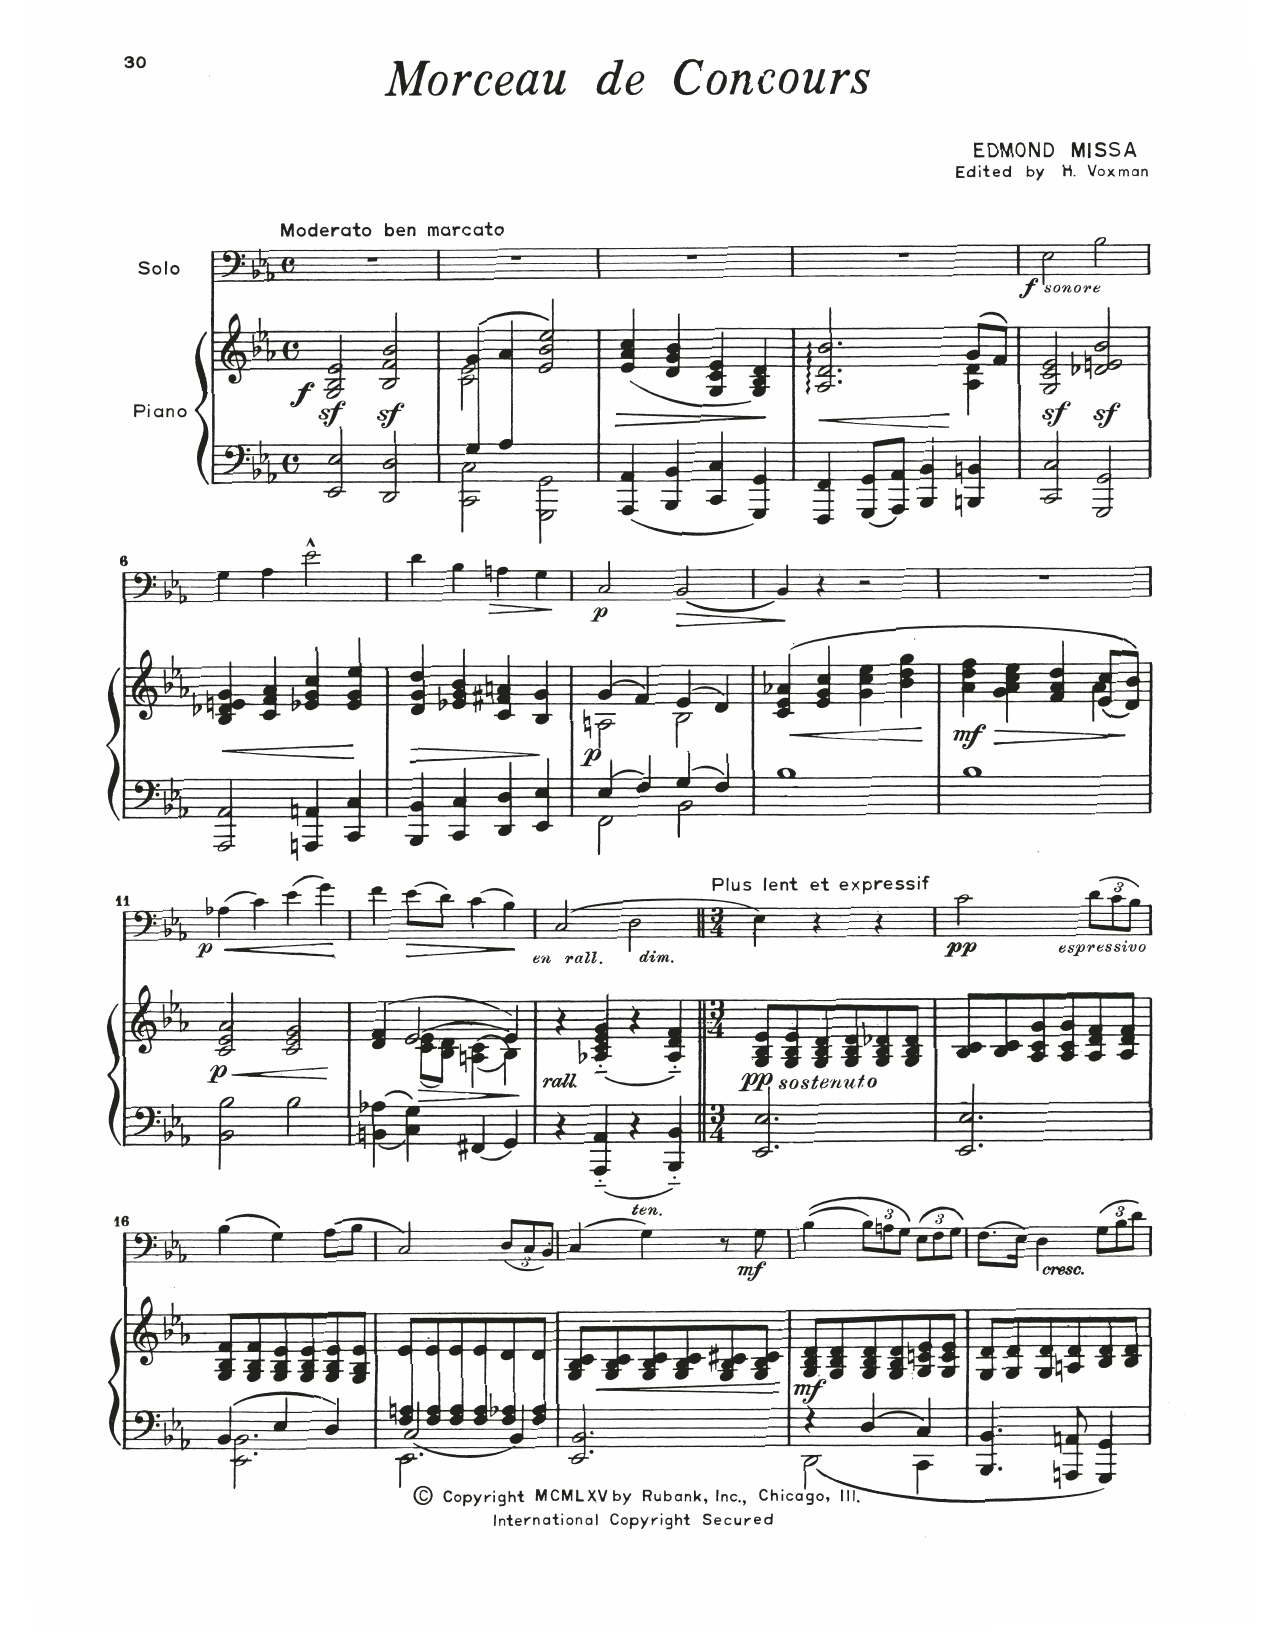 Download Edmond Missa Morceau De Concours Sheet Music